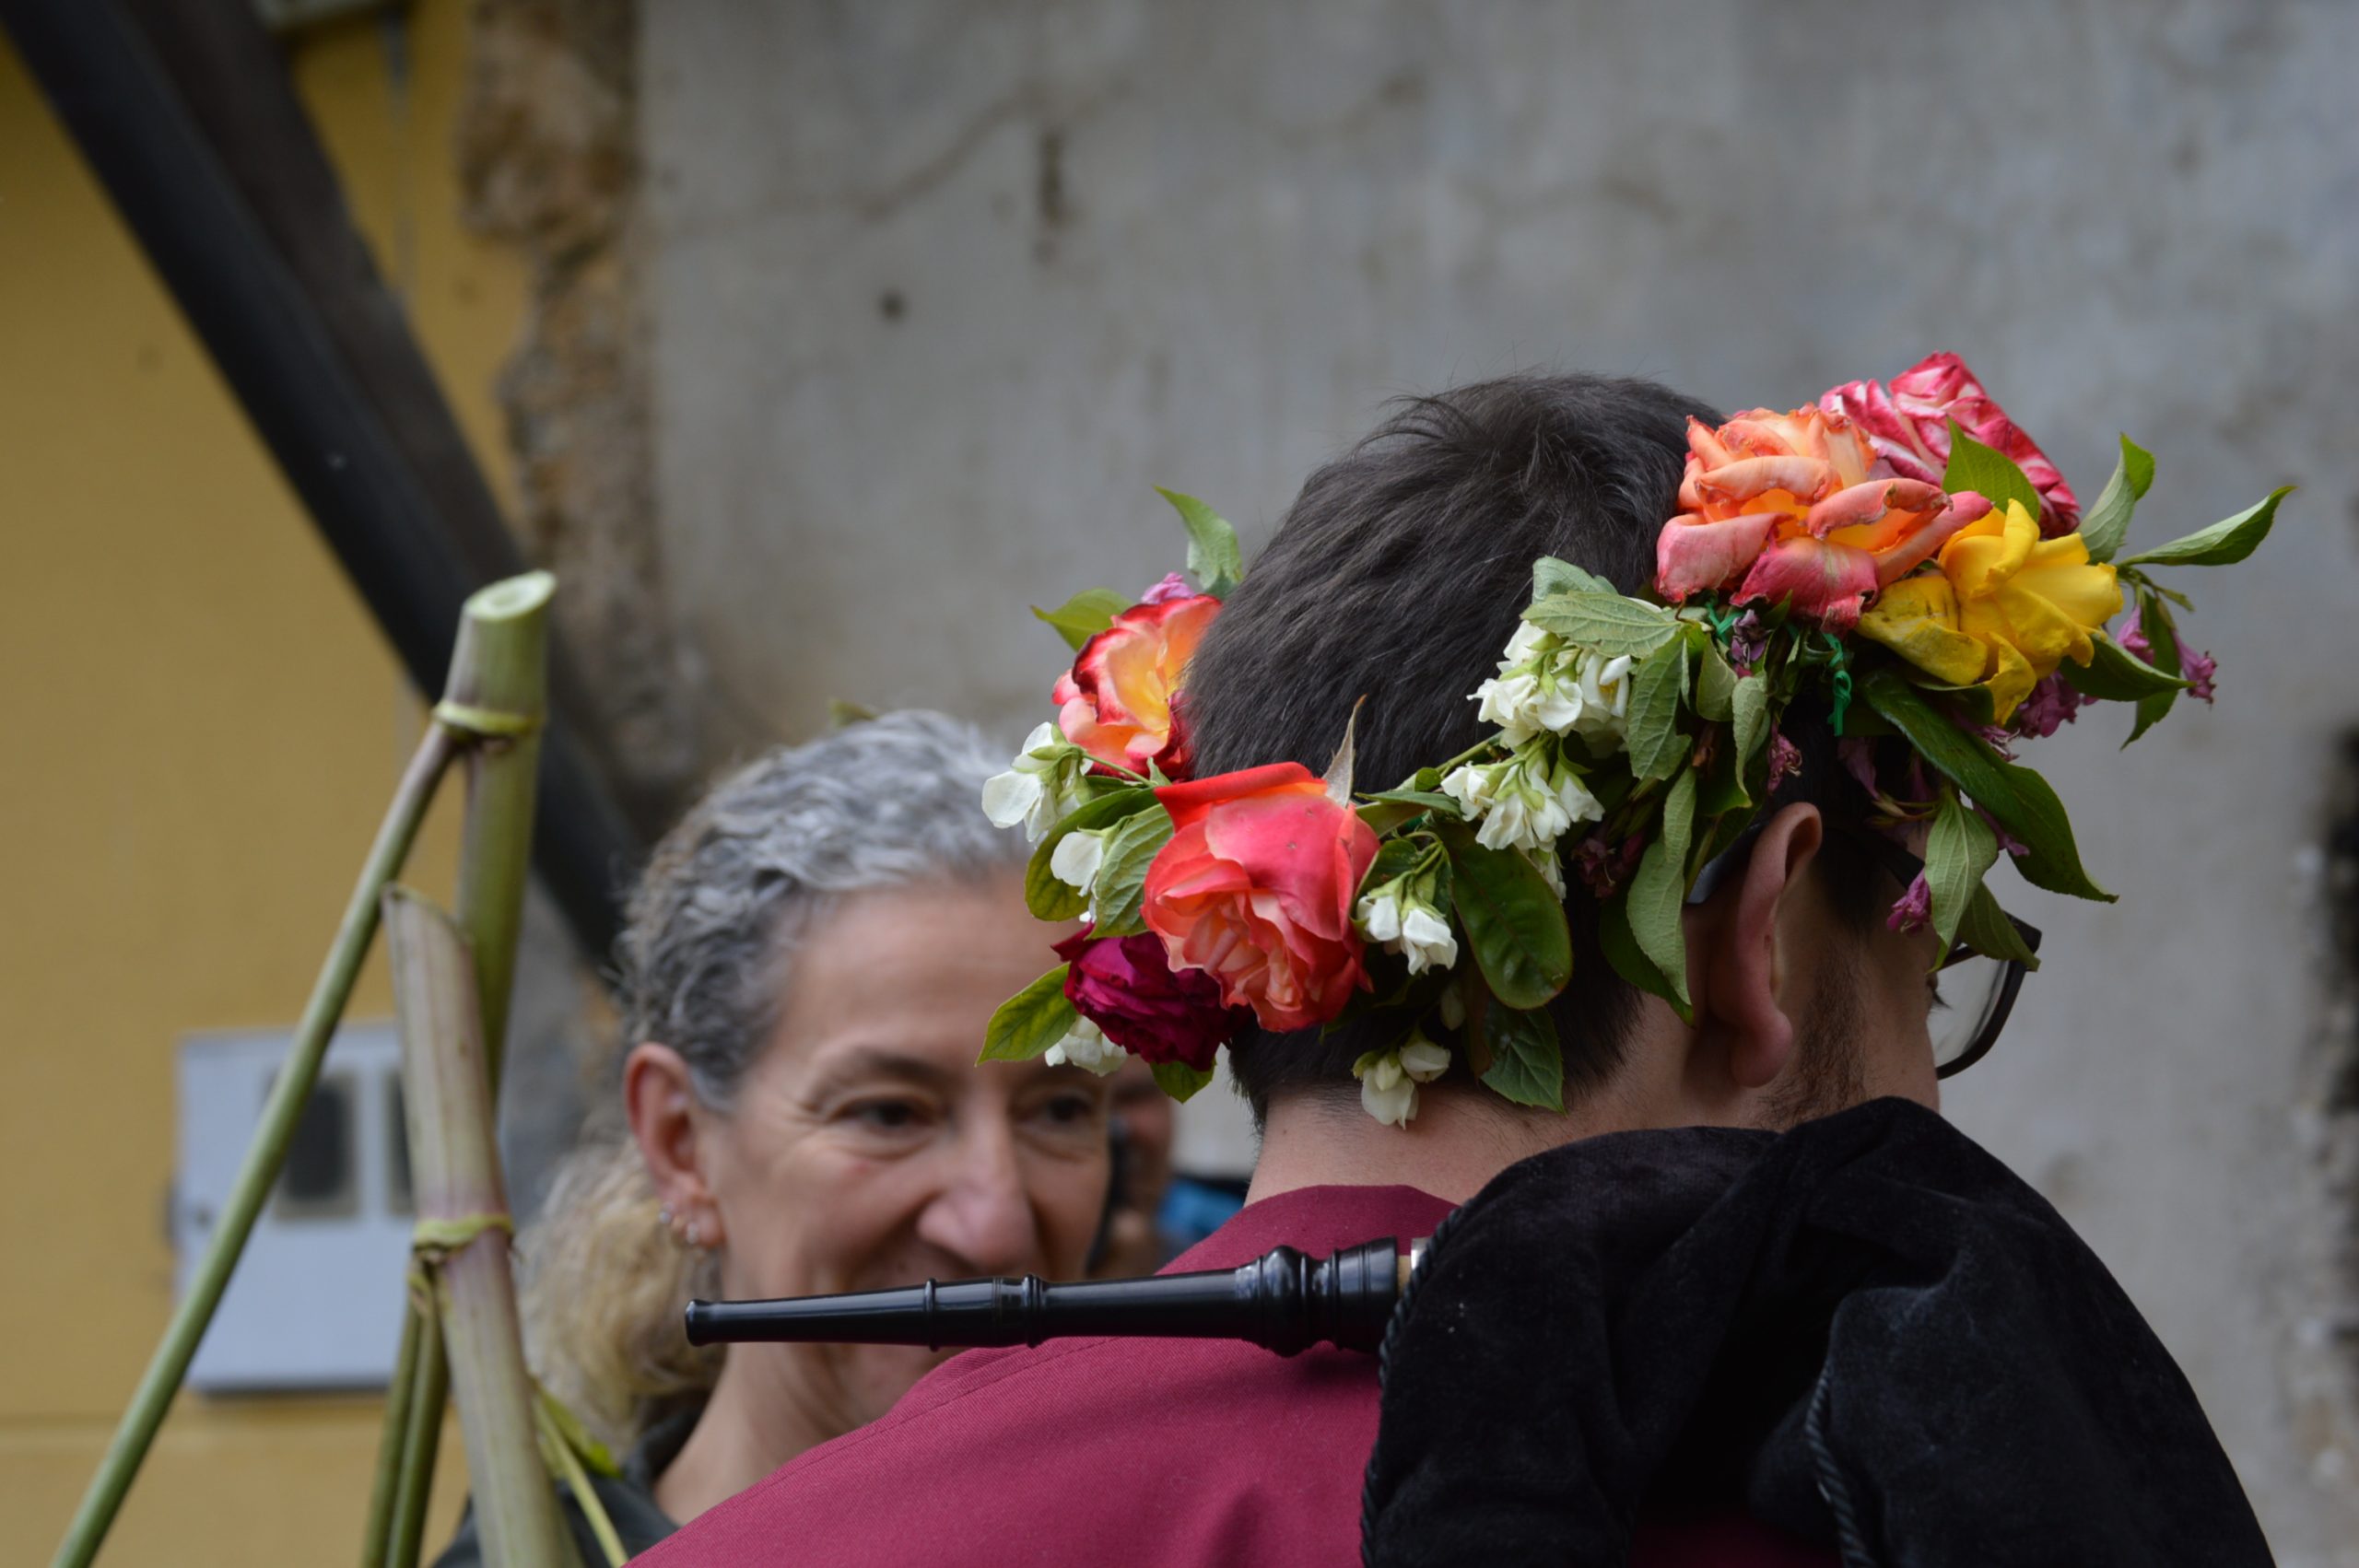 fotogalería| Los Maios de Villafranca; Cañaveira, cuerda pita, flores y ganas de celebrar el cambio de estación 25